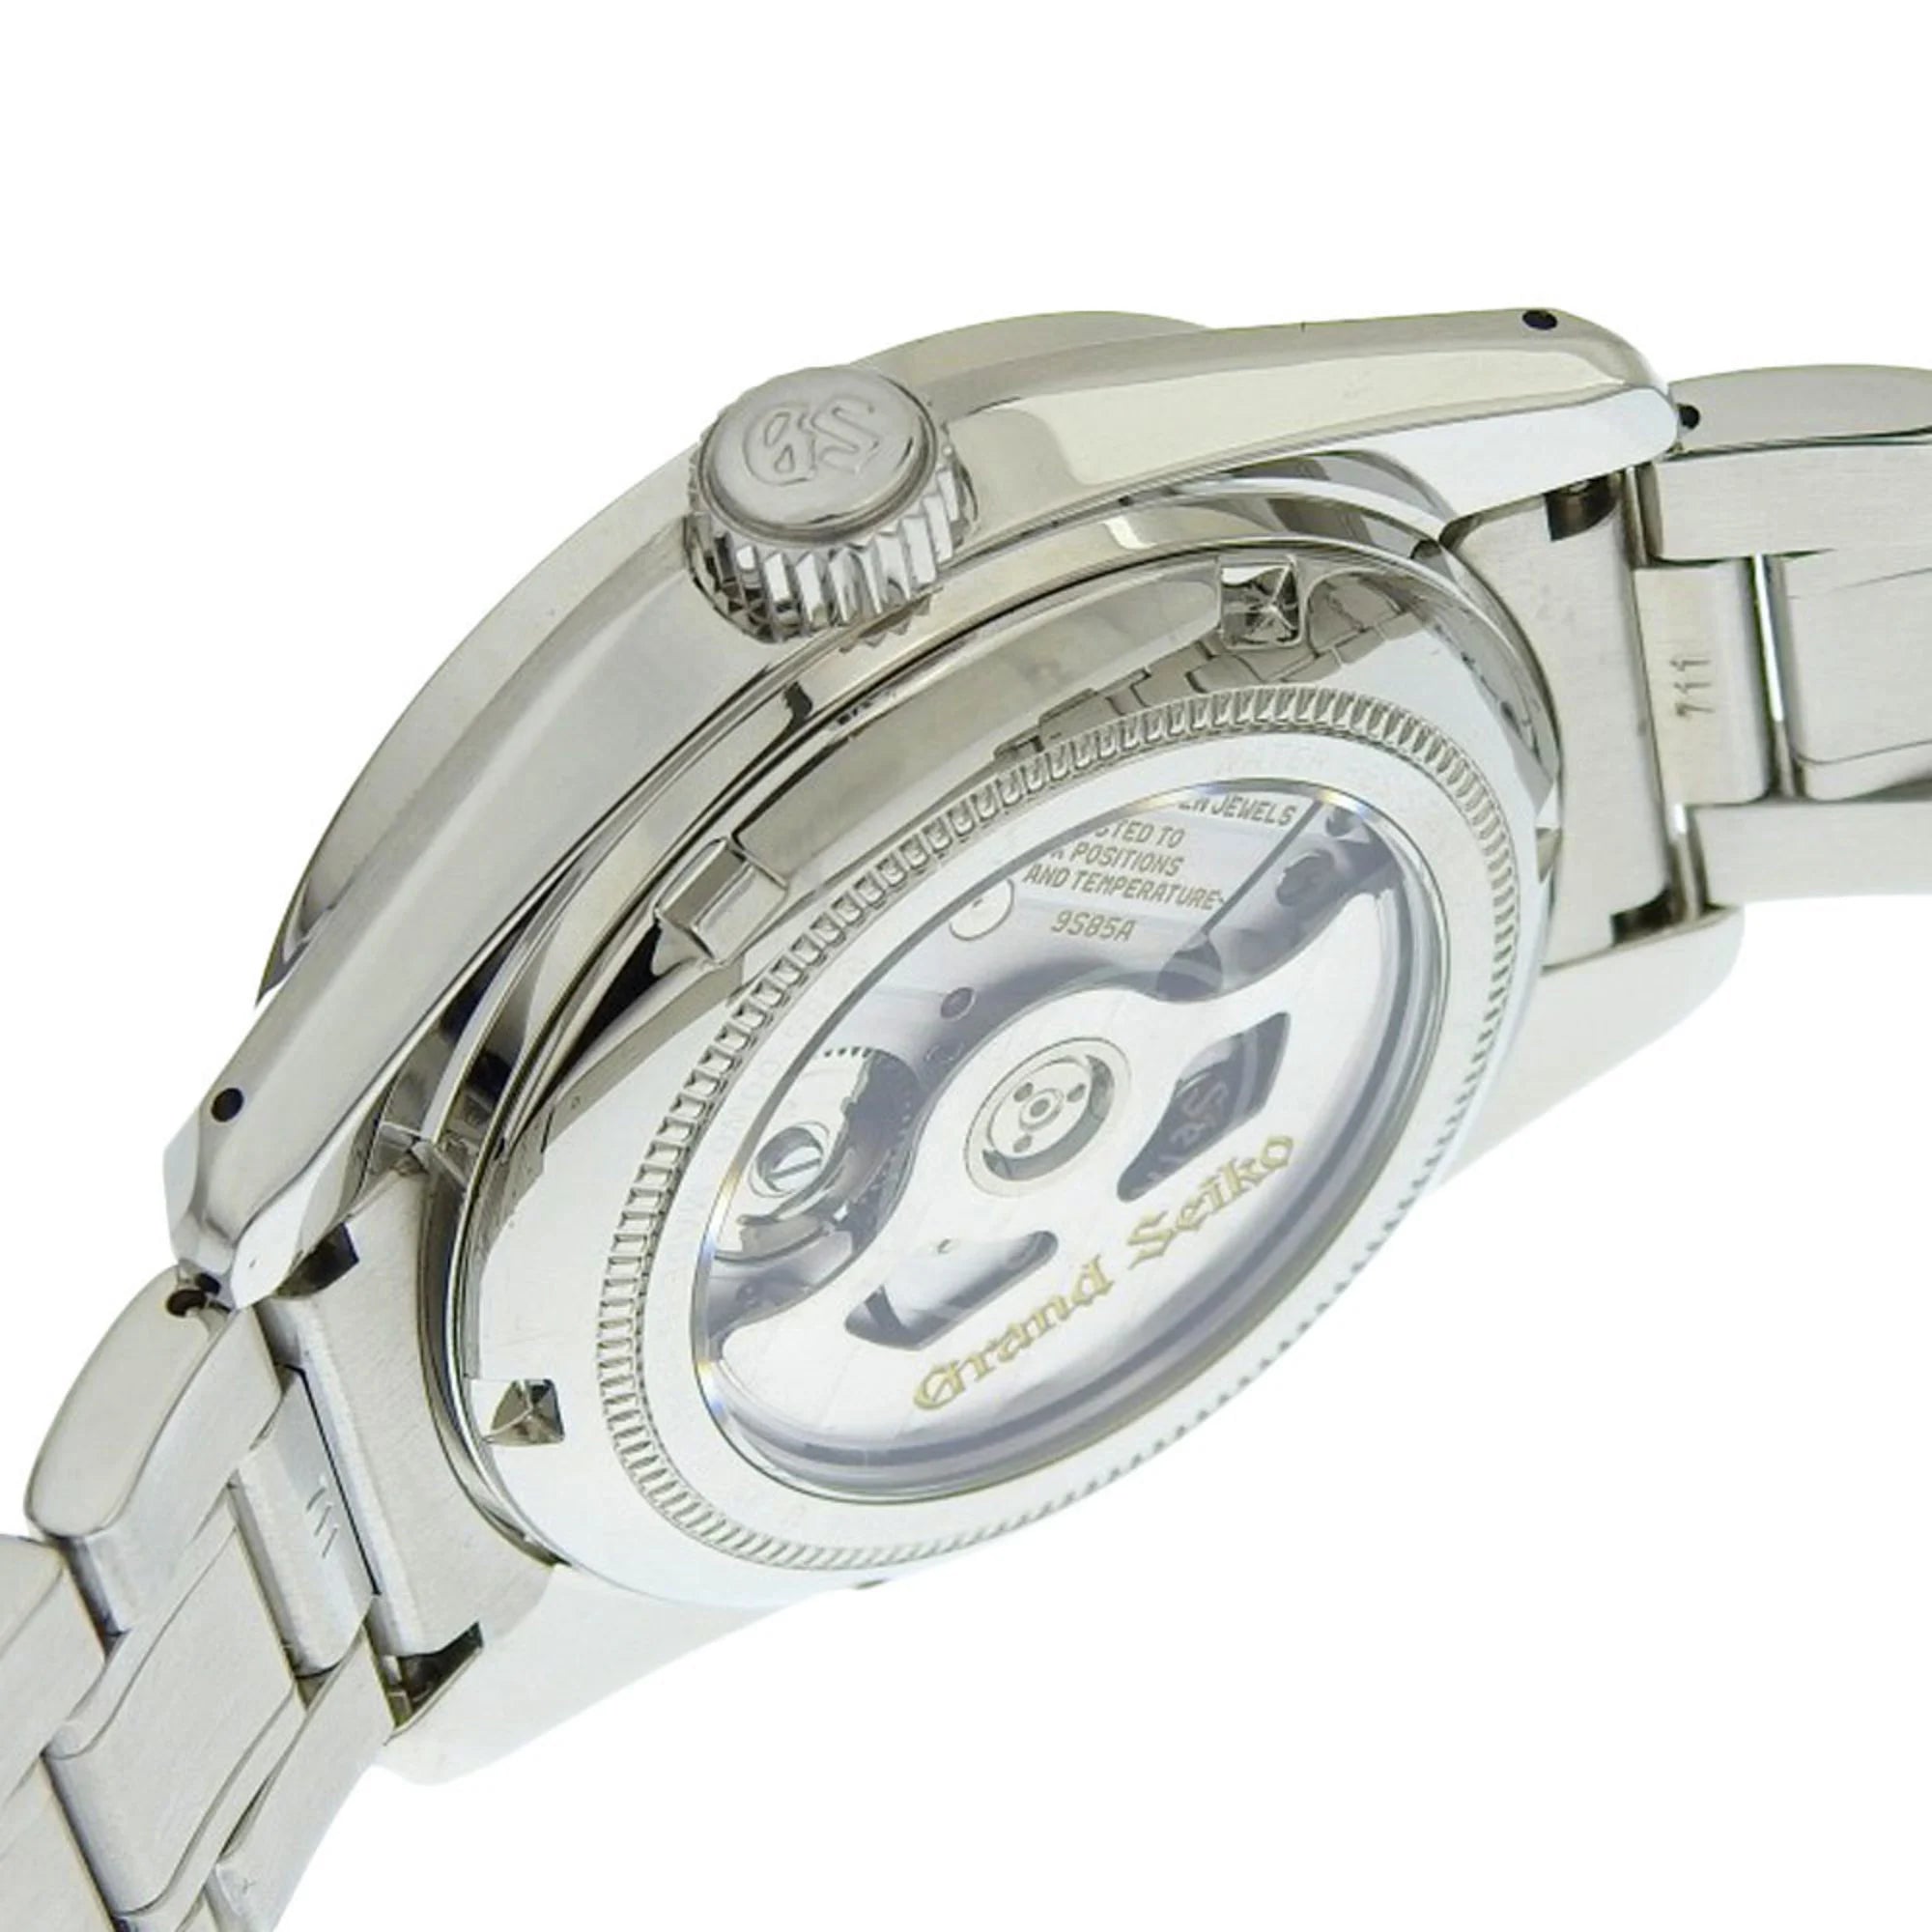 Reloj Grand Seiko Heritage para hombre con esfera blanca, 40 mm, Ref#SBGH277